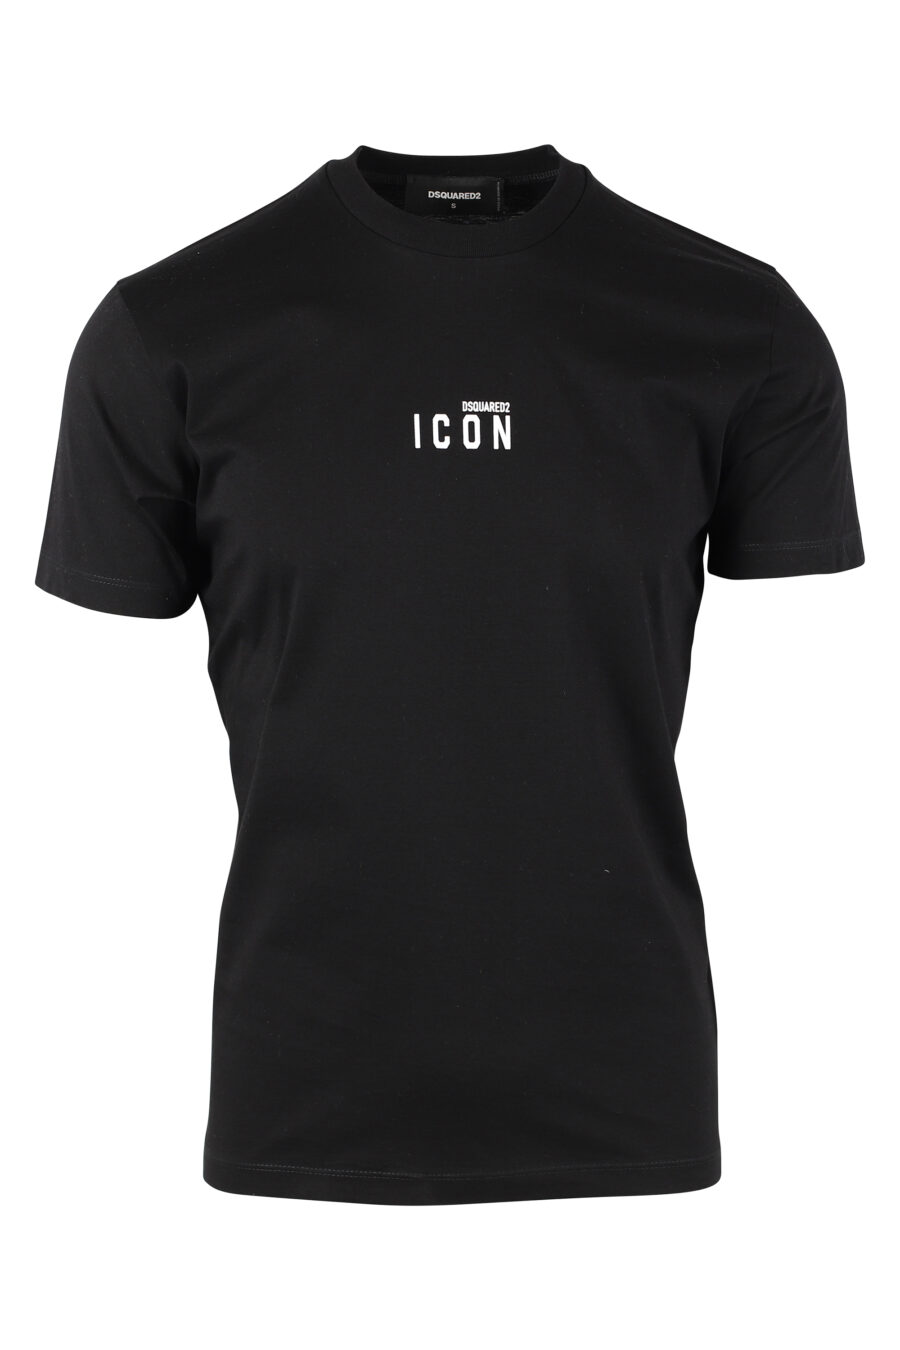 T-shirt noir avec minilogue "icon" - IMG 9766